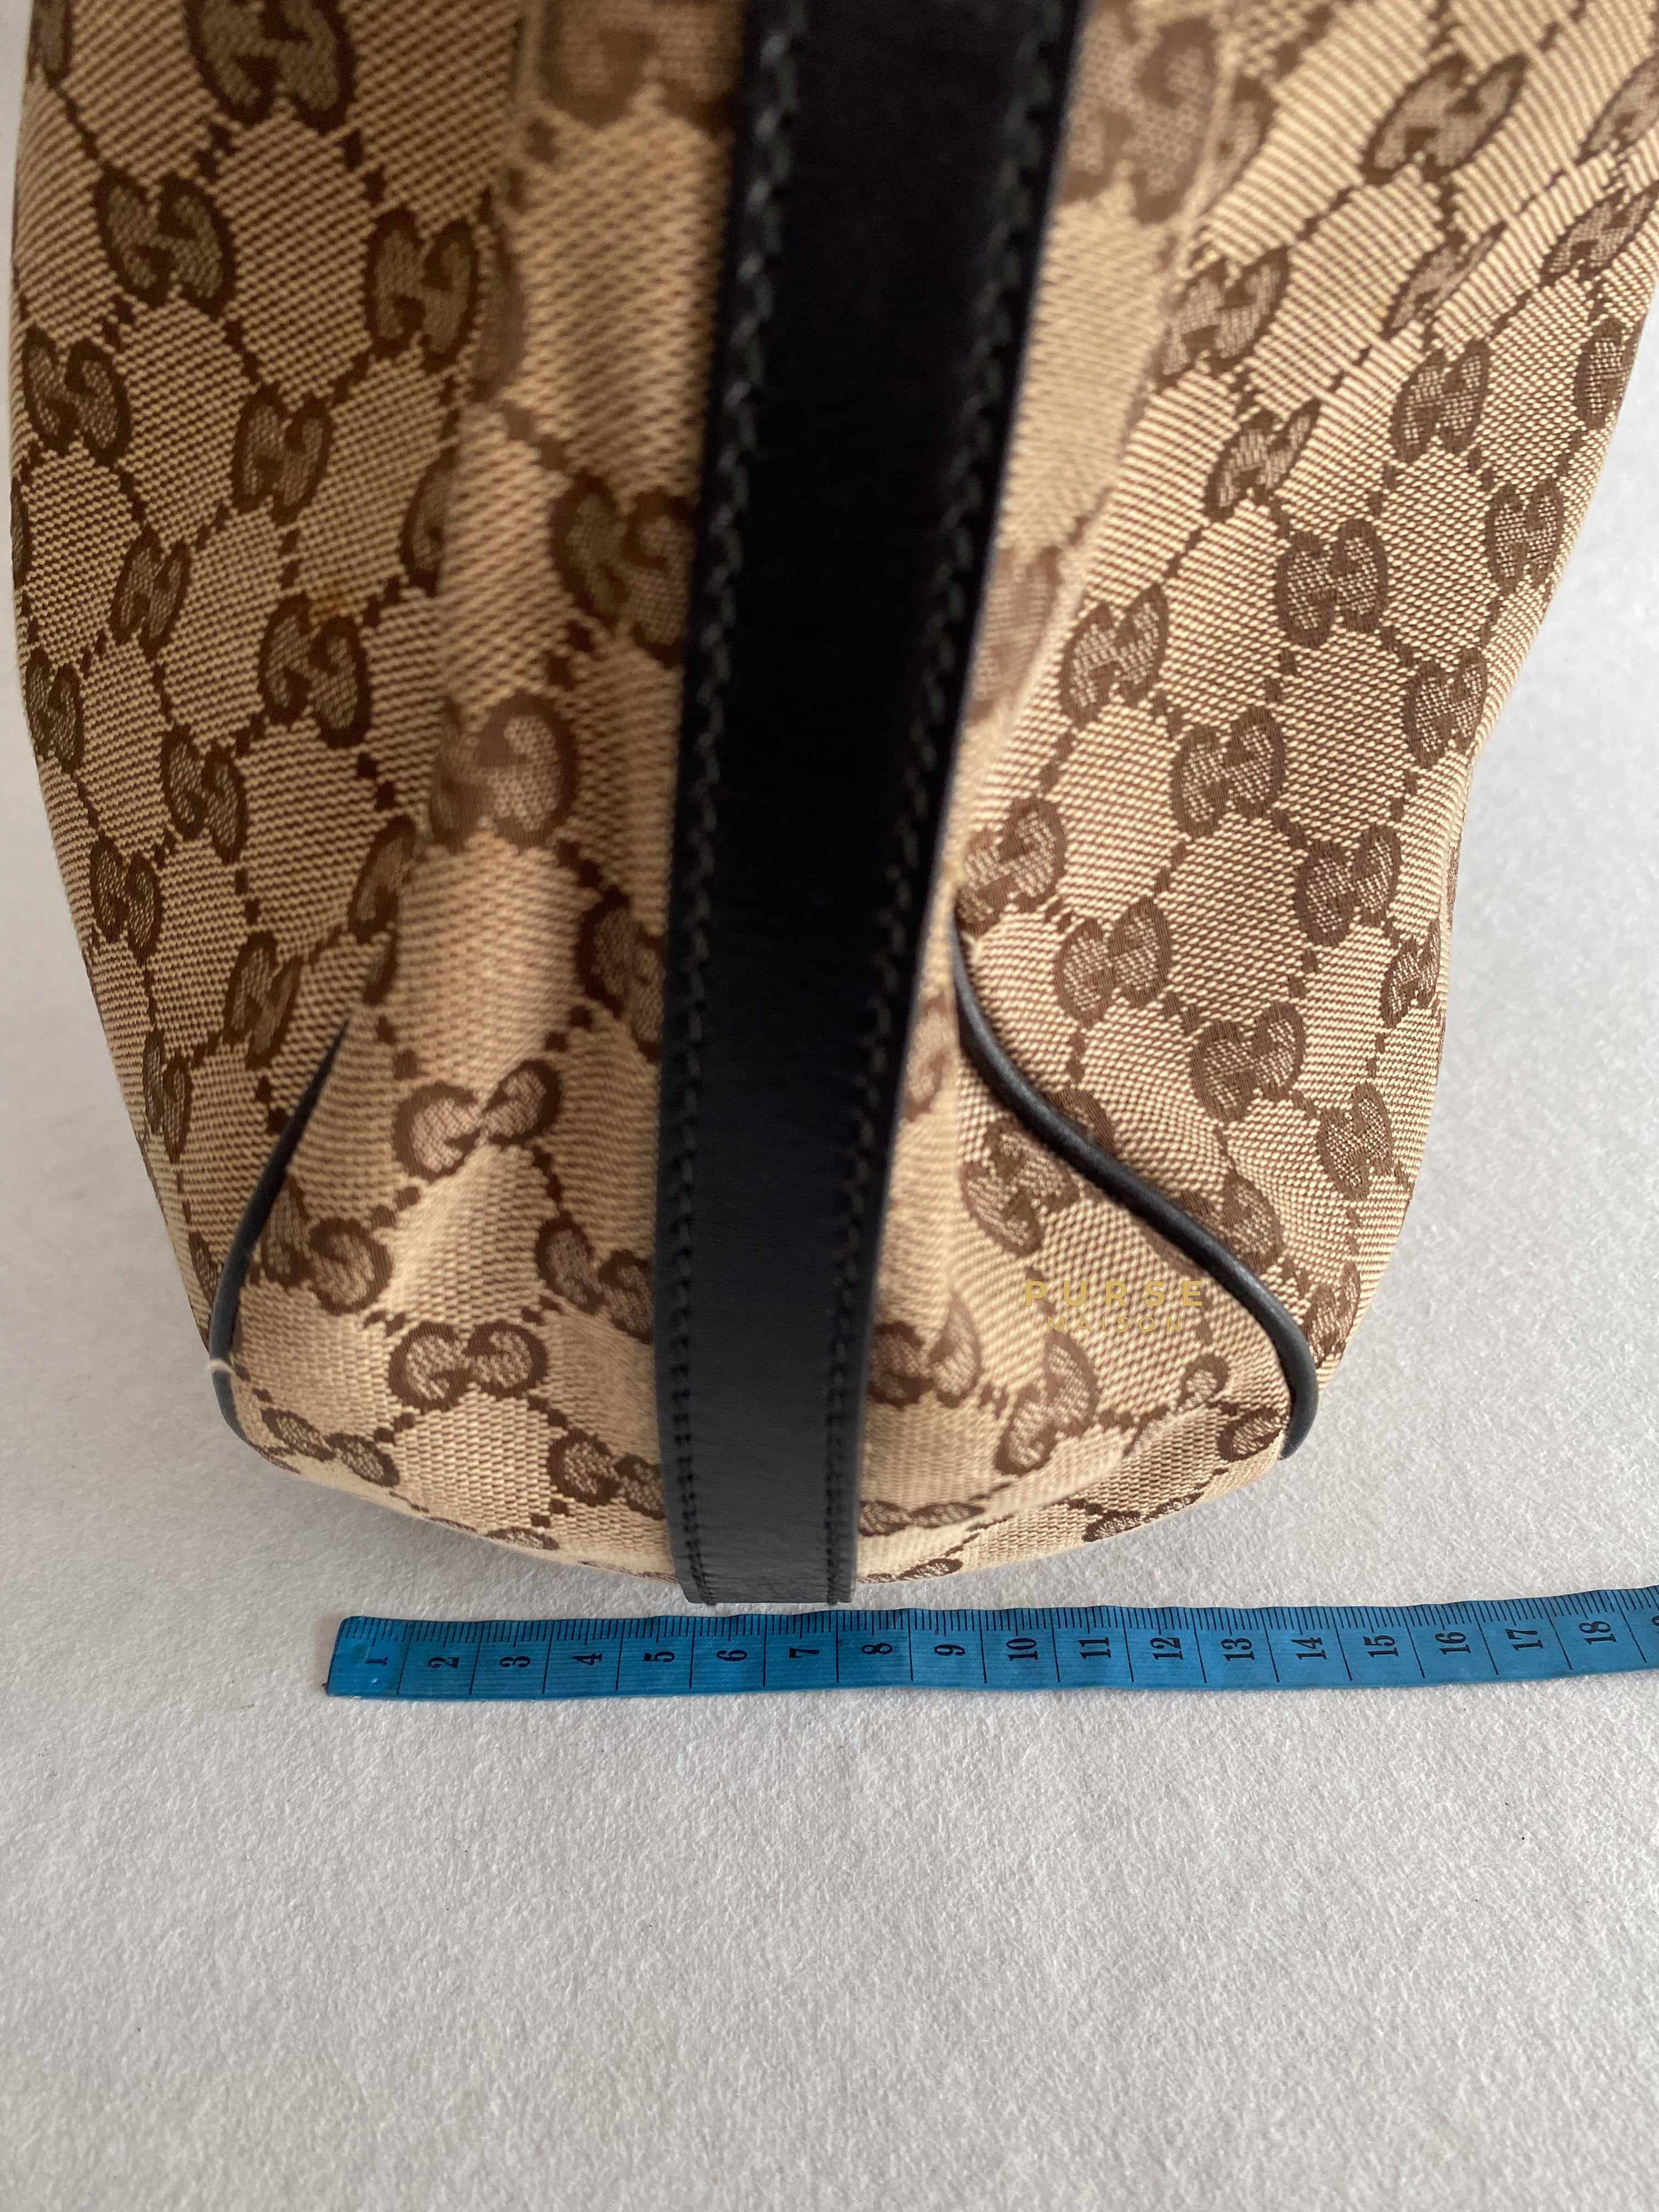 Gucci Gucci Beige GG Canvas & Brown Leather Mini Tote Bag